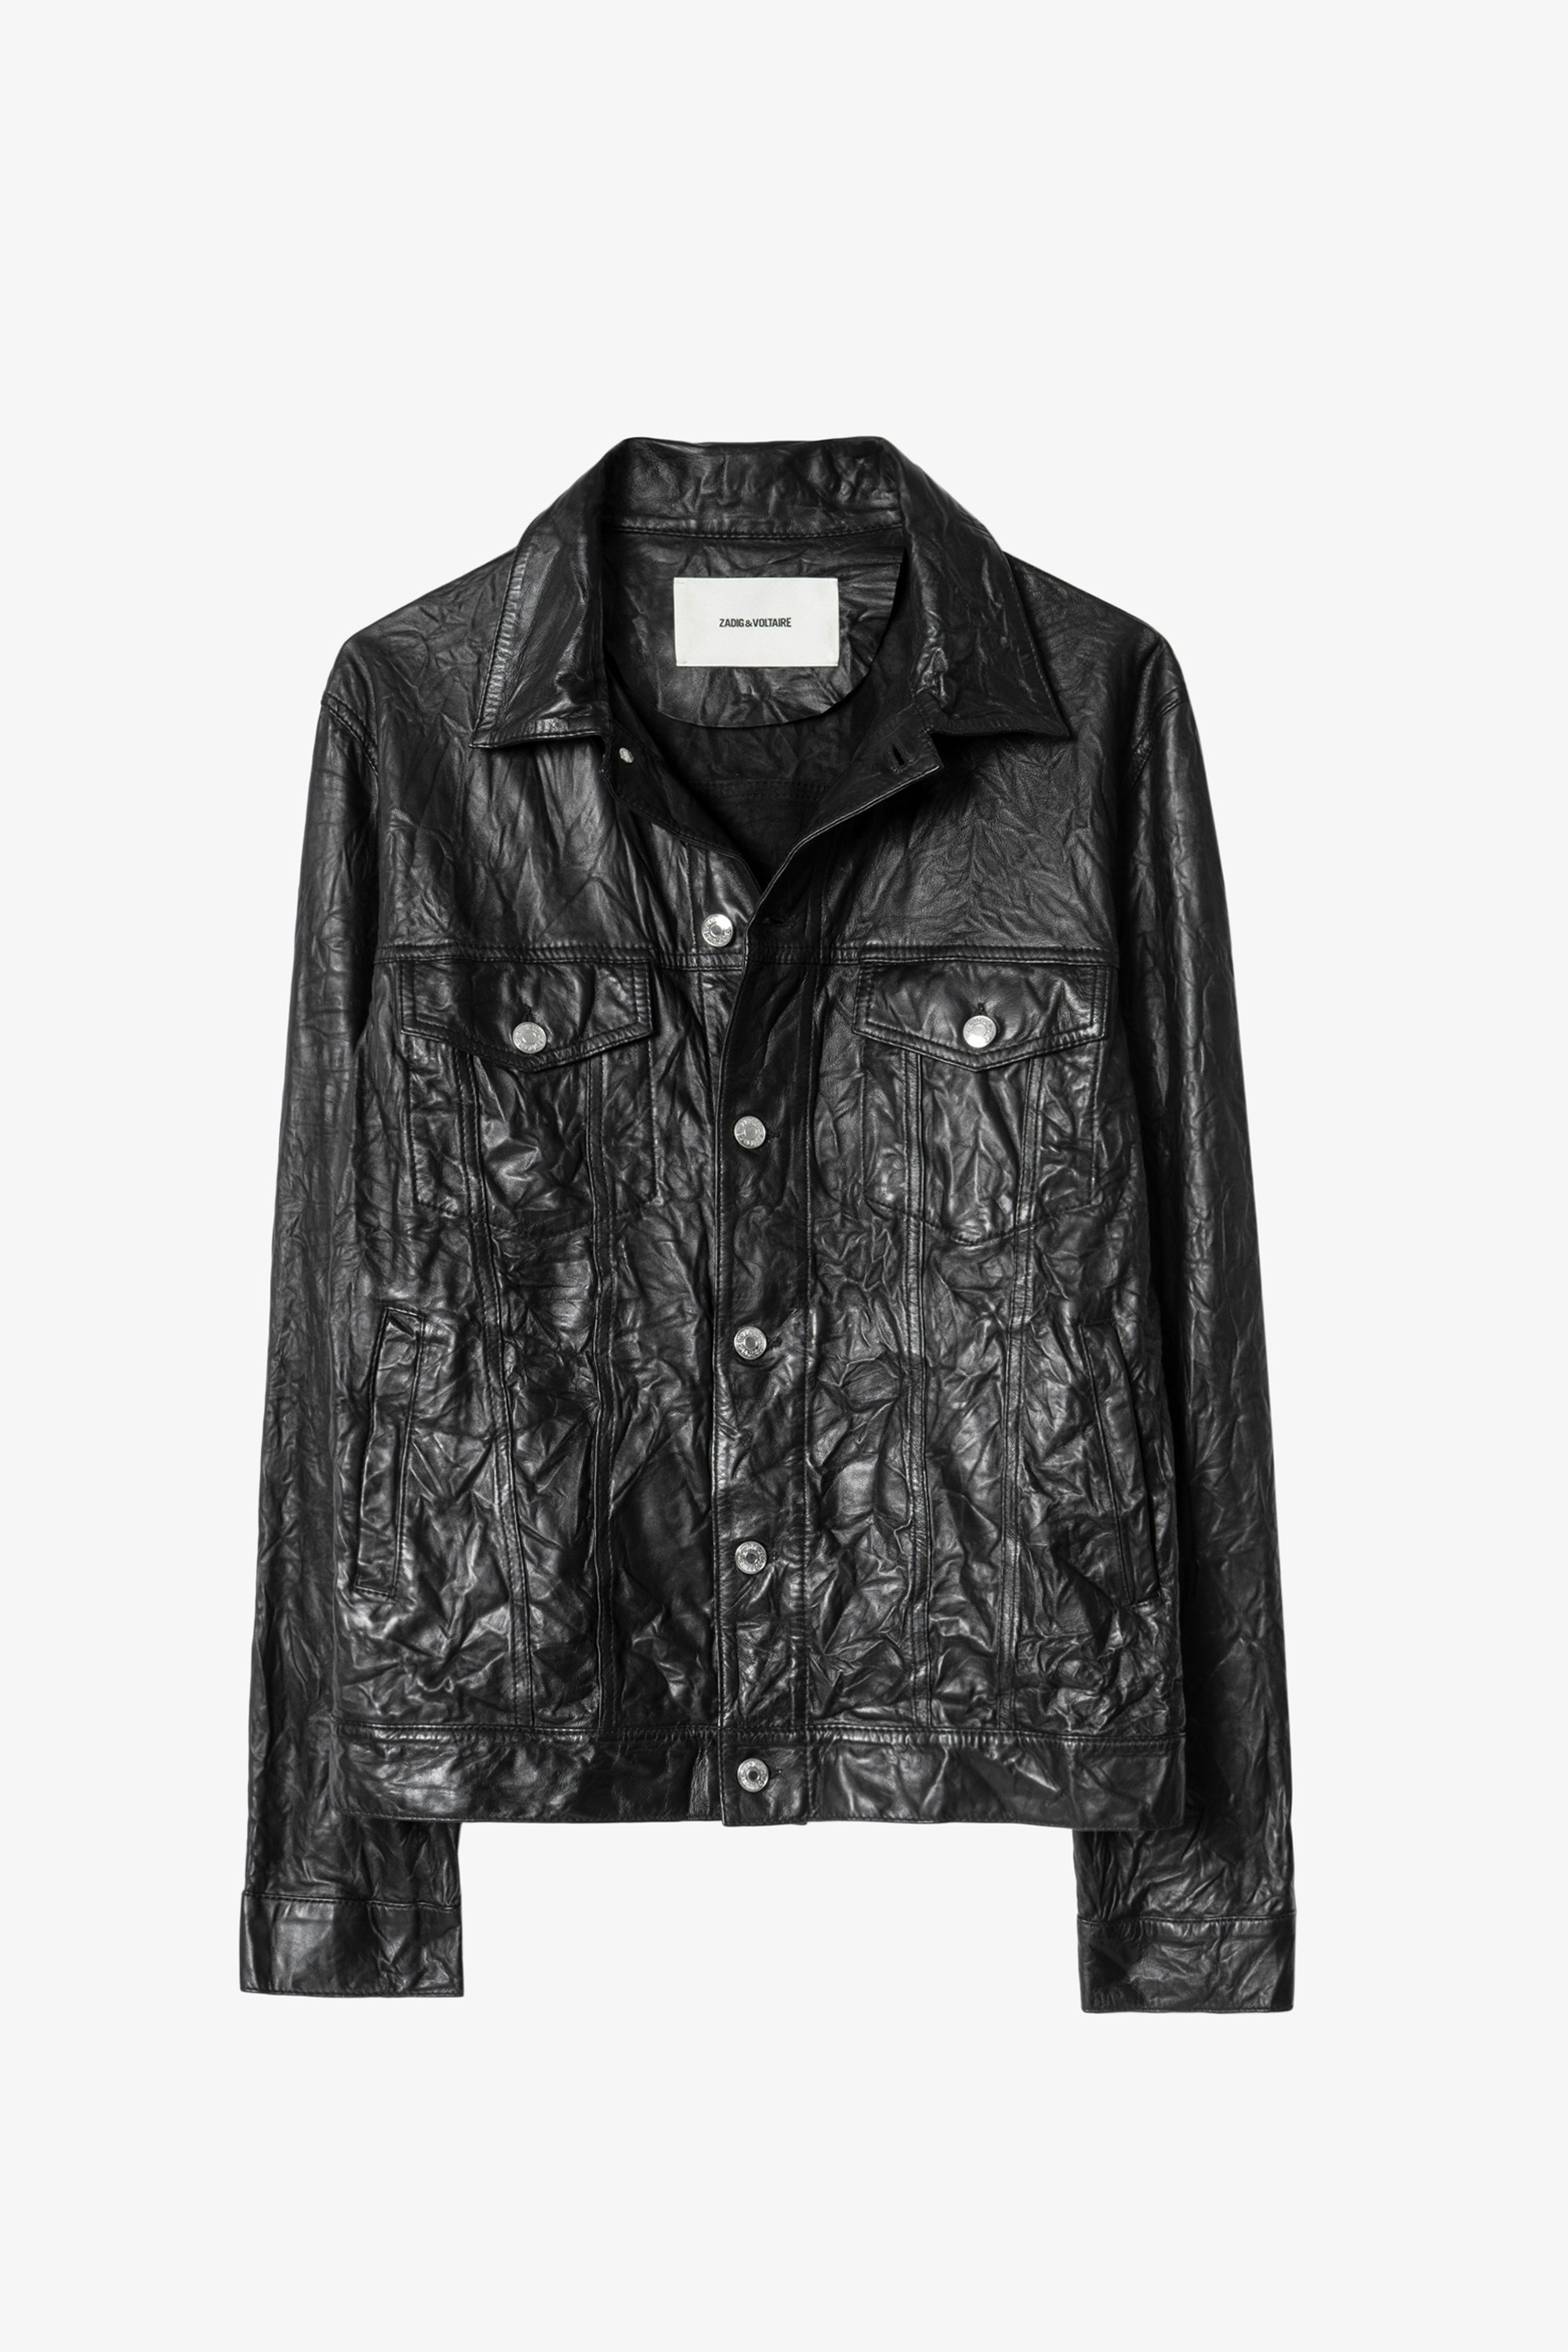 Base Crinkled Leather Jacket - Men's black jacket